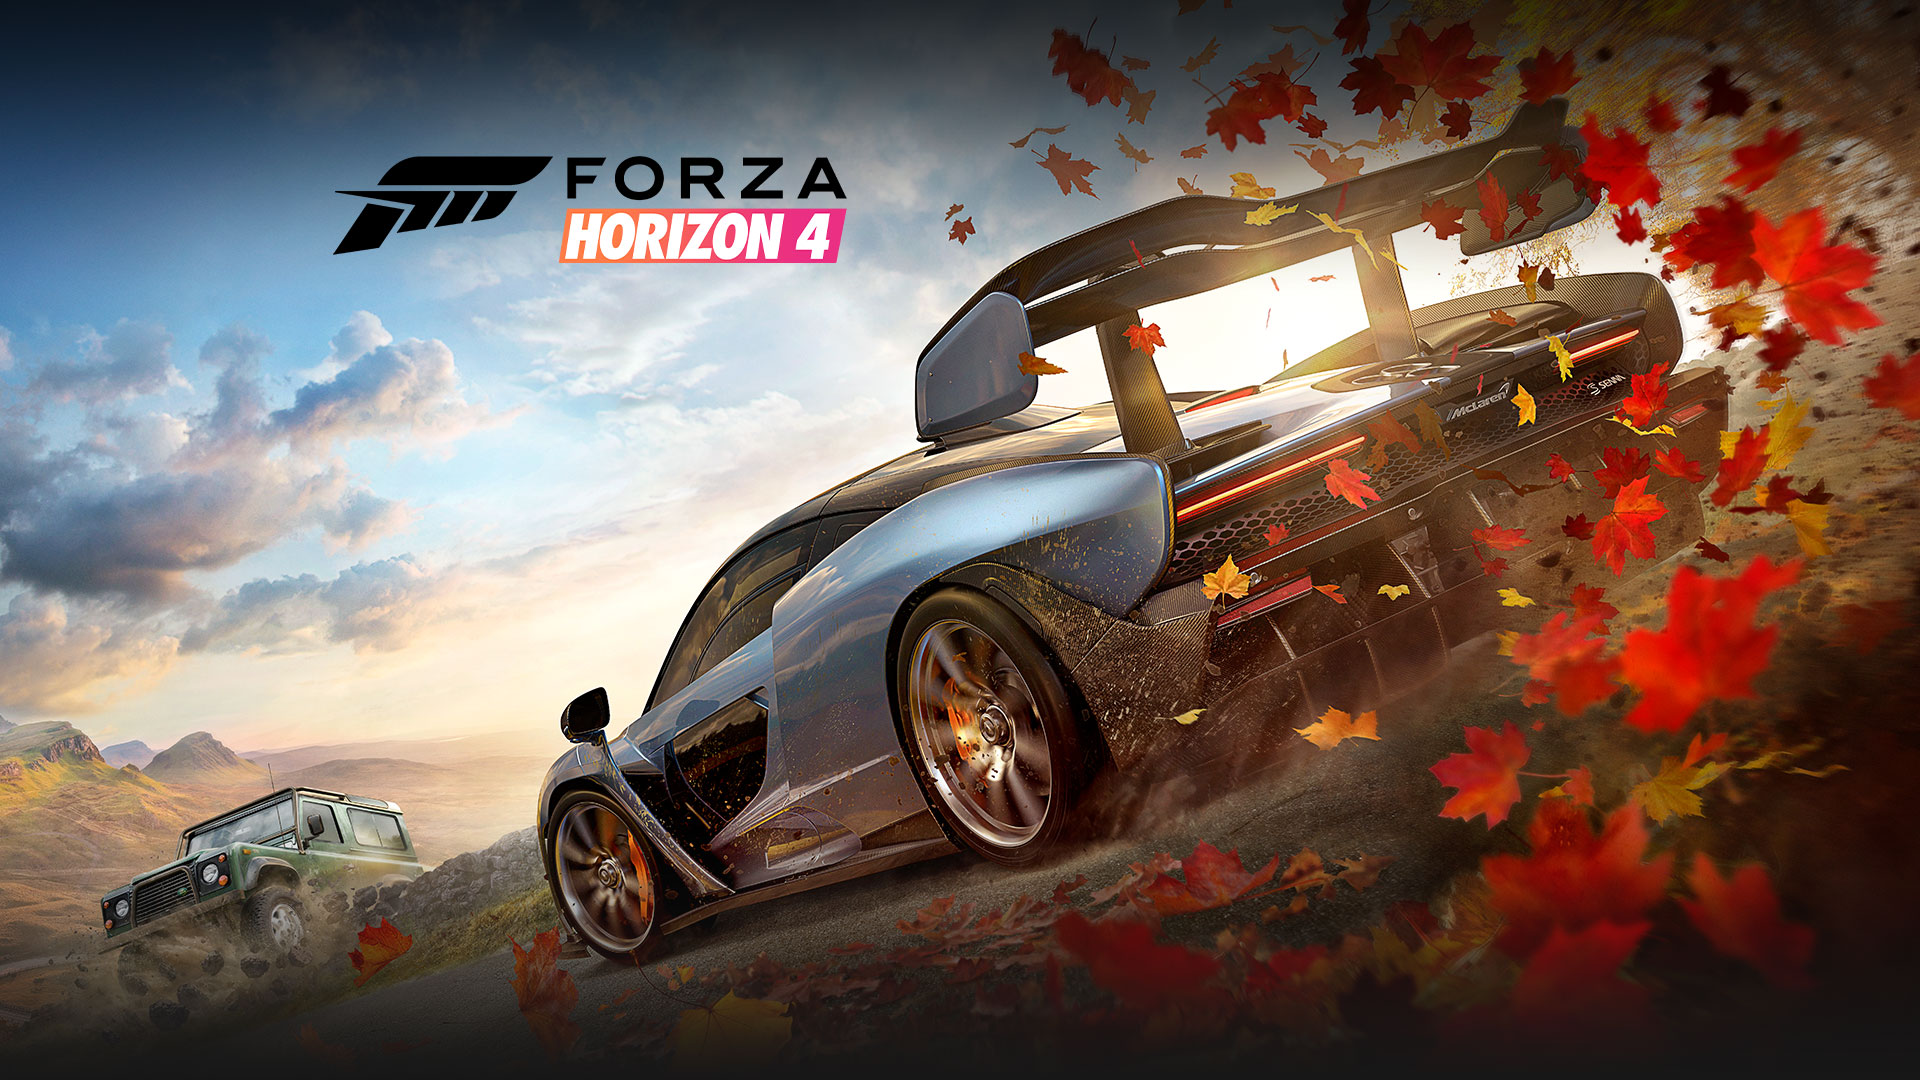 Forza Horizon 4, to biler med blad bak en av dem